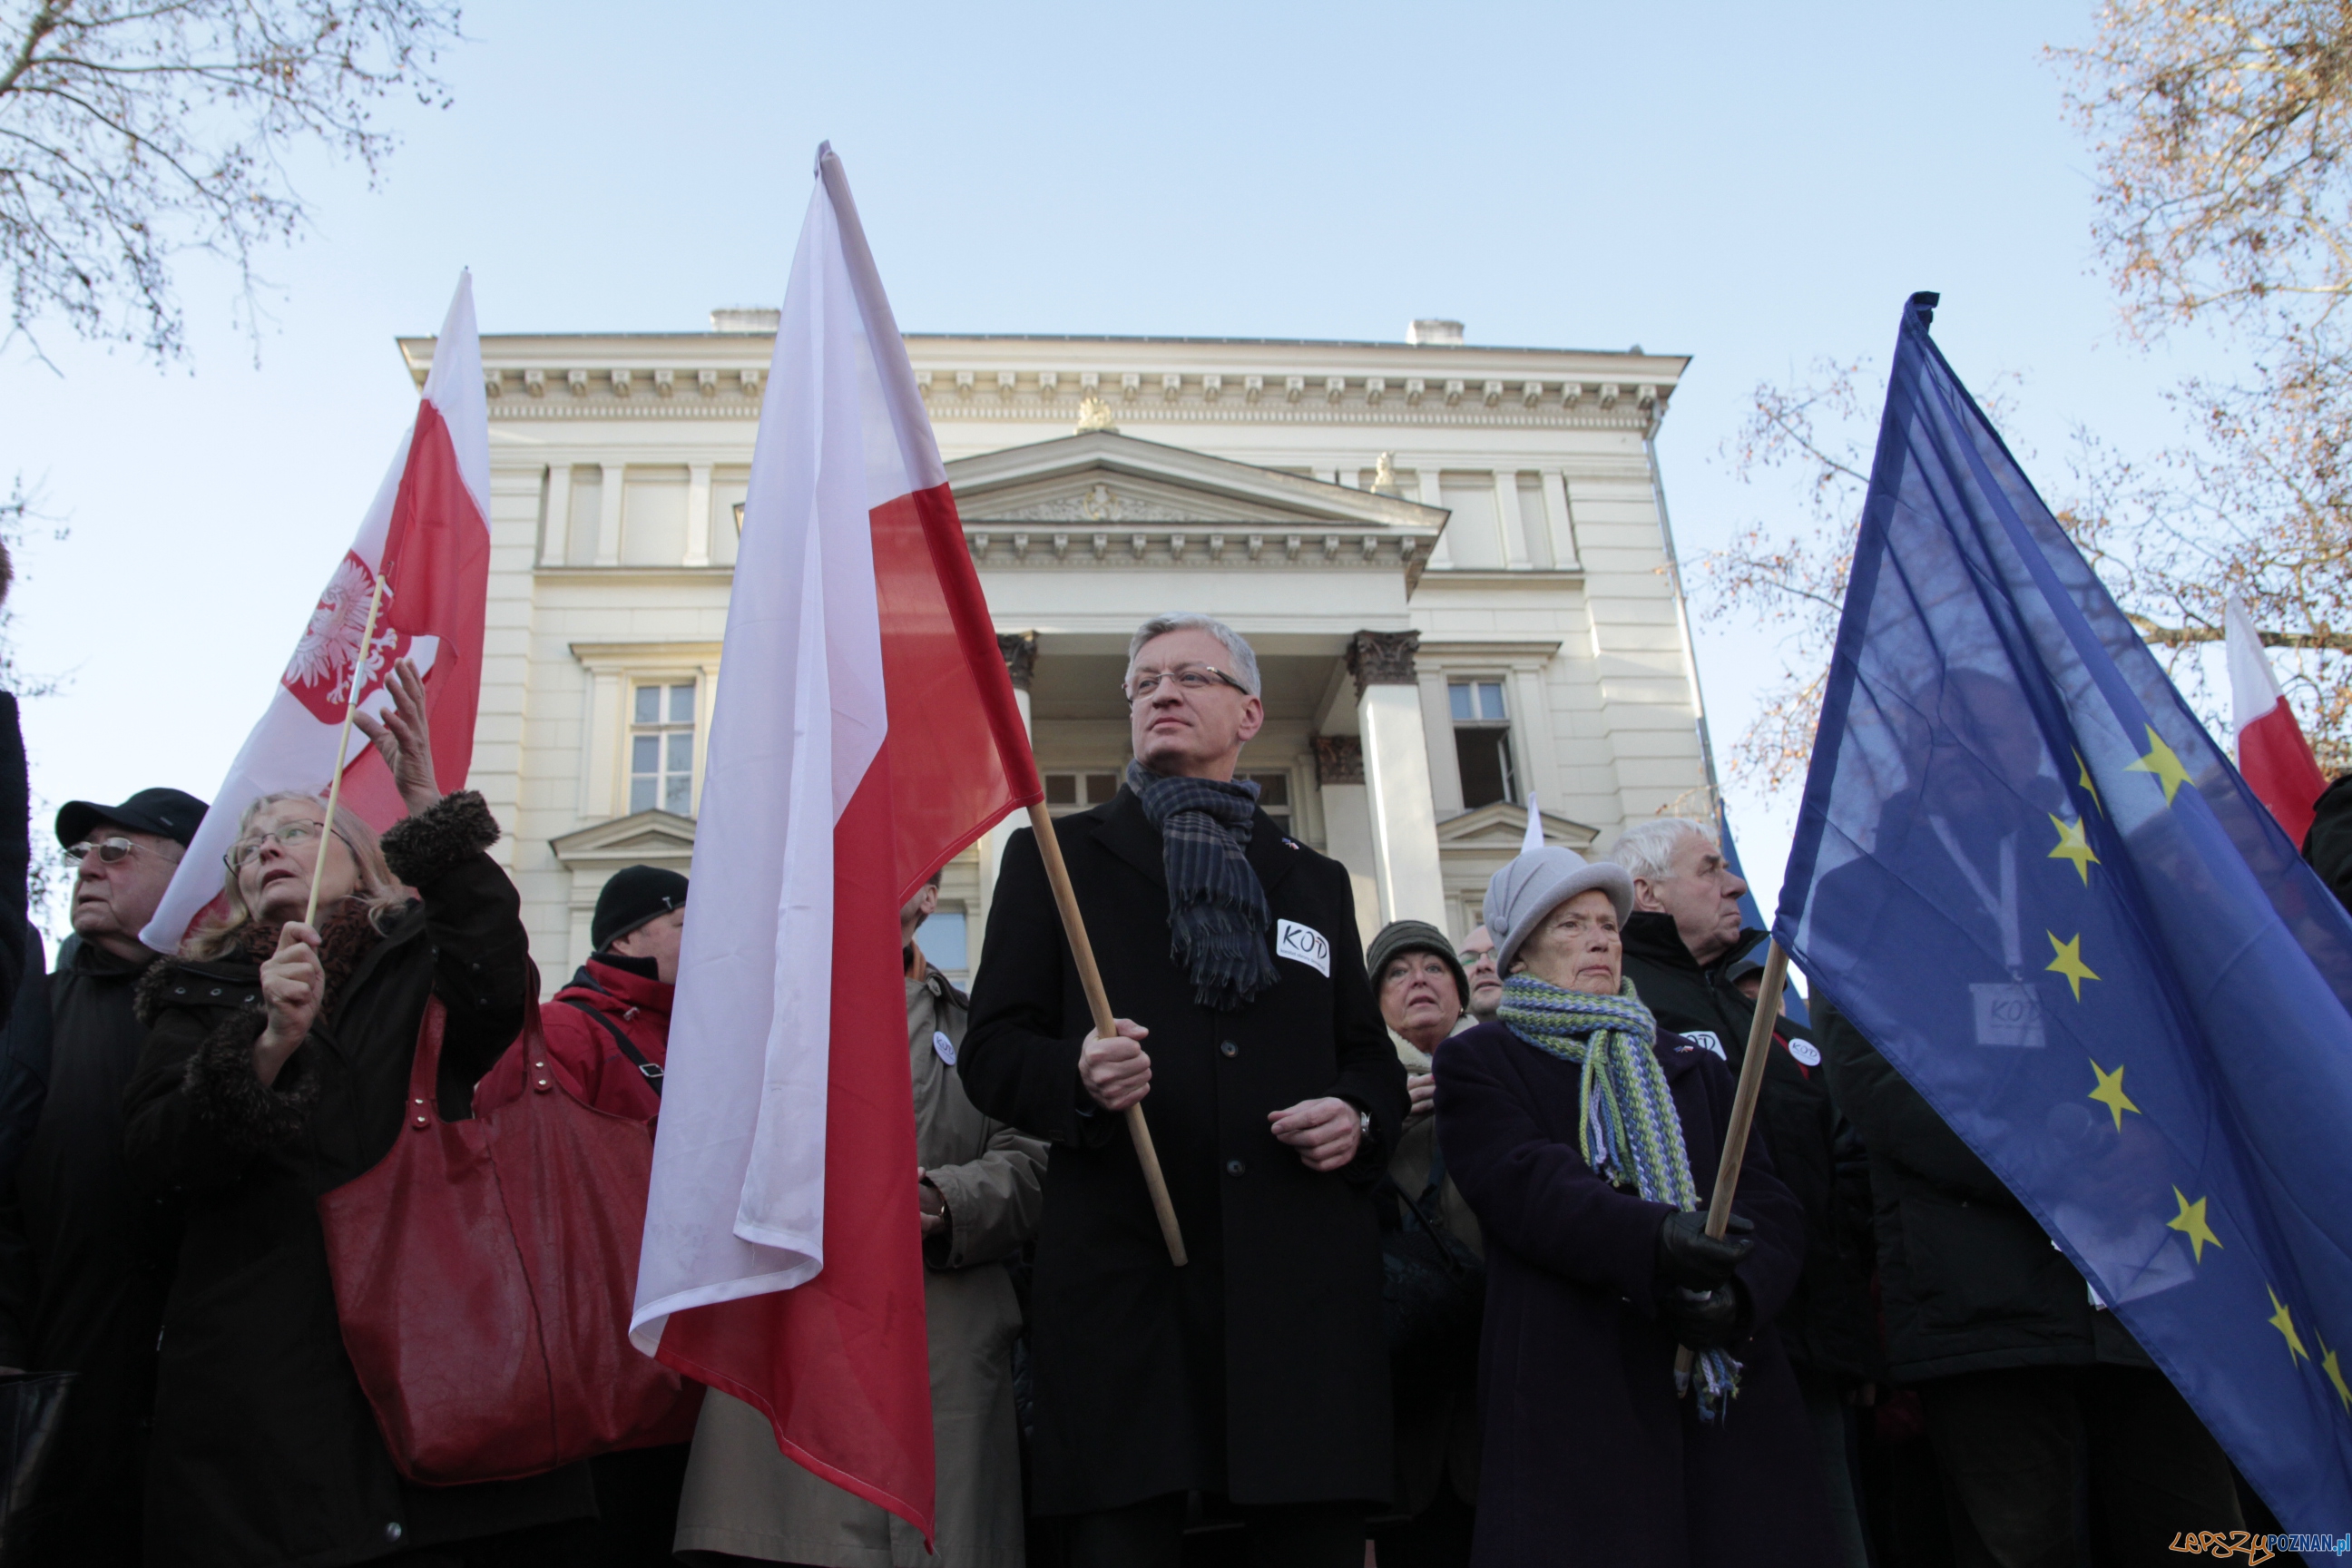 Szybka migawka - protest w obronie mediów  Foto: LepszyPOZNAN.pl / Pawel Rychter